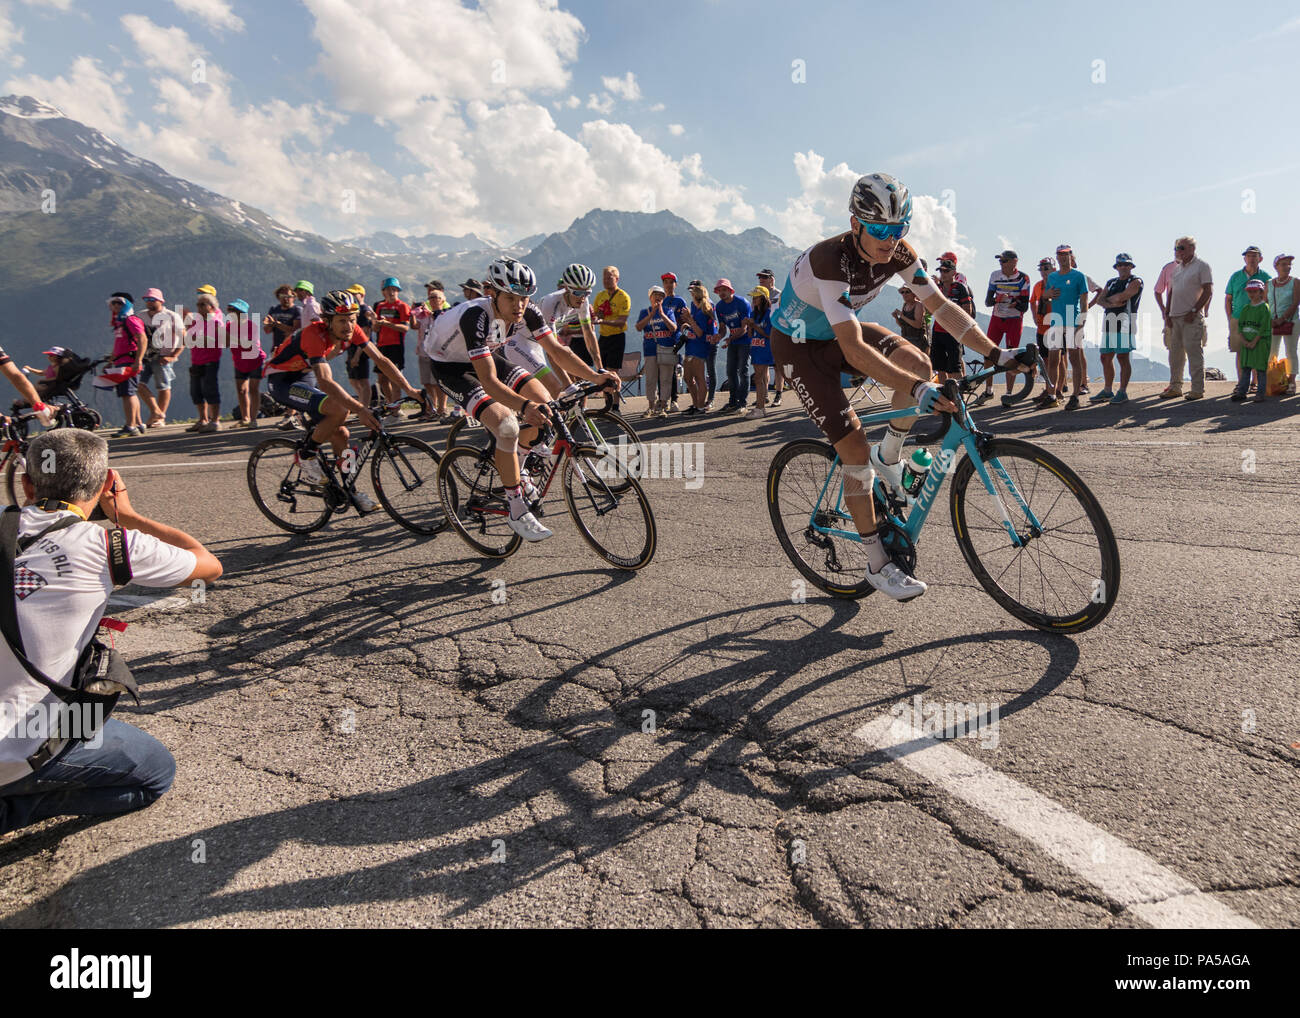 Tour de France 2018 Radsport Stadium 11 La Rosiere Rhone Alpes Savoie Frankreich Stockfoto